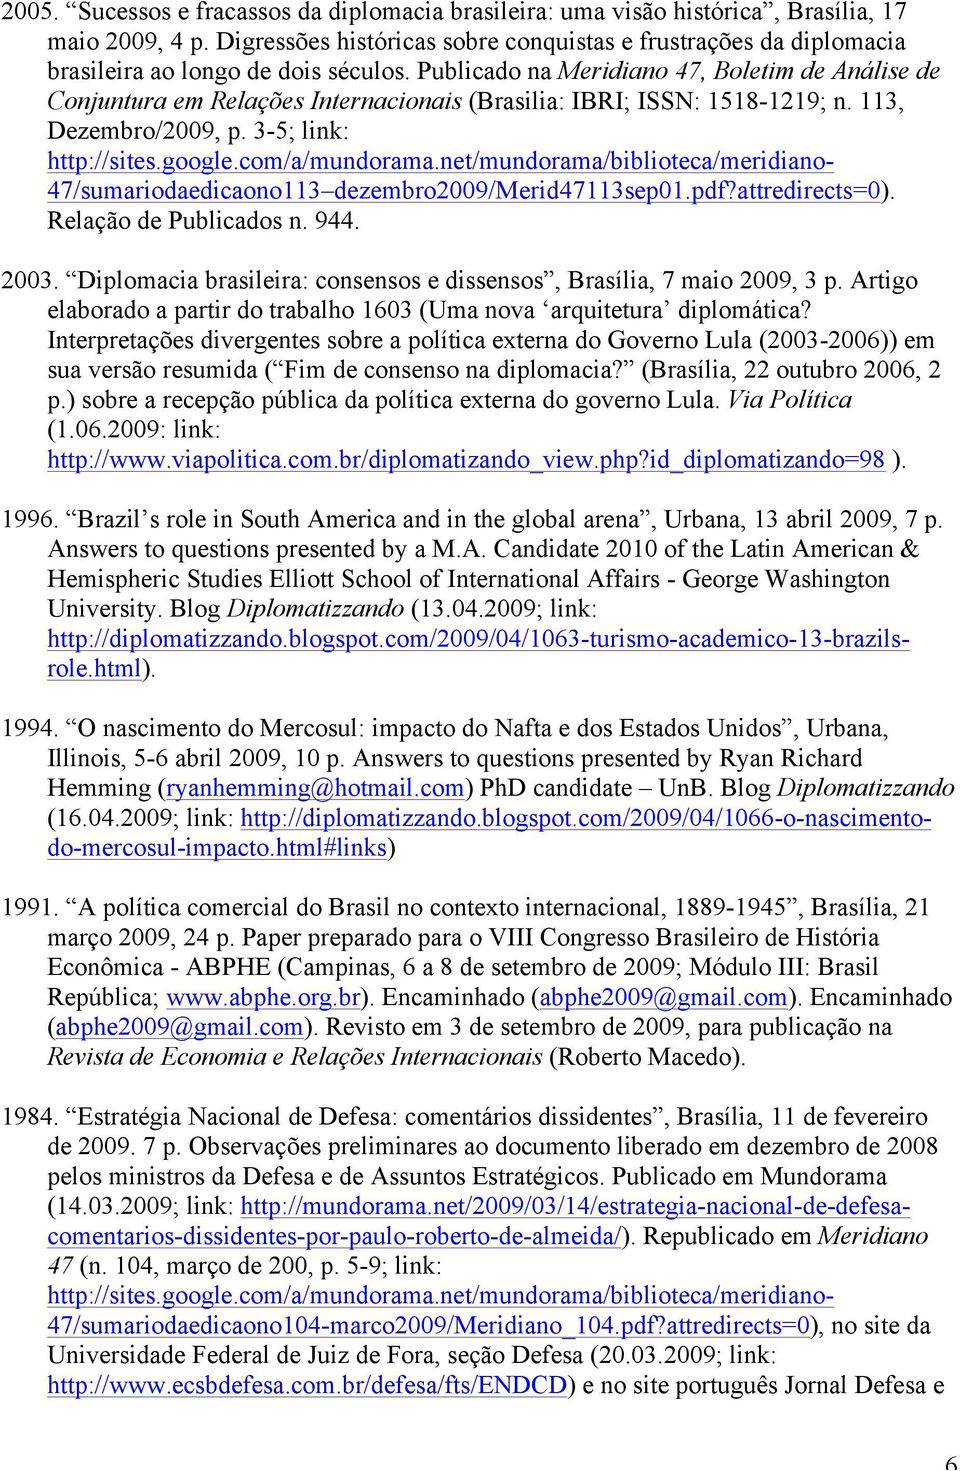 Publicado na Meridiano 47, Boletim de Análise de Conjuntura em Relações Internacionais (Brasilia: IBRI; ISSN: 1518-1219; n. 113, Dezembro/2009, p. 3-5; link: http://sites.google.com/a/mundorama.